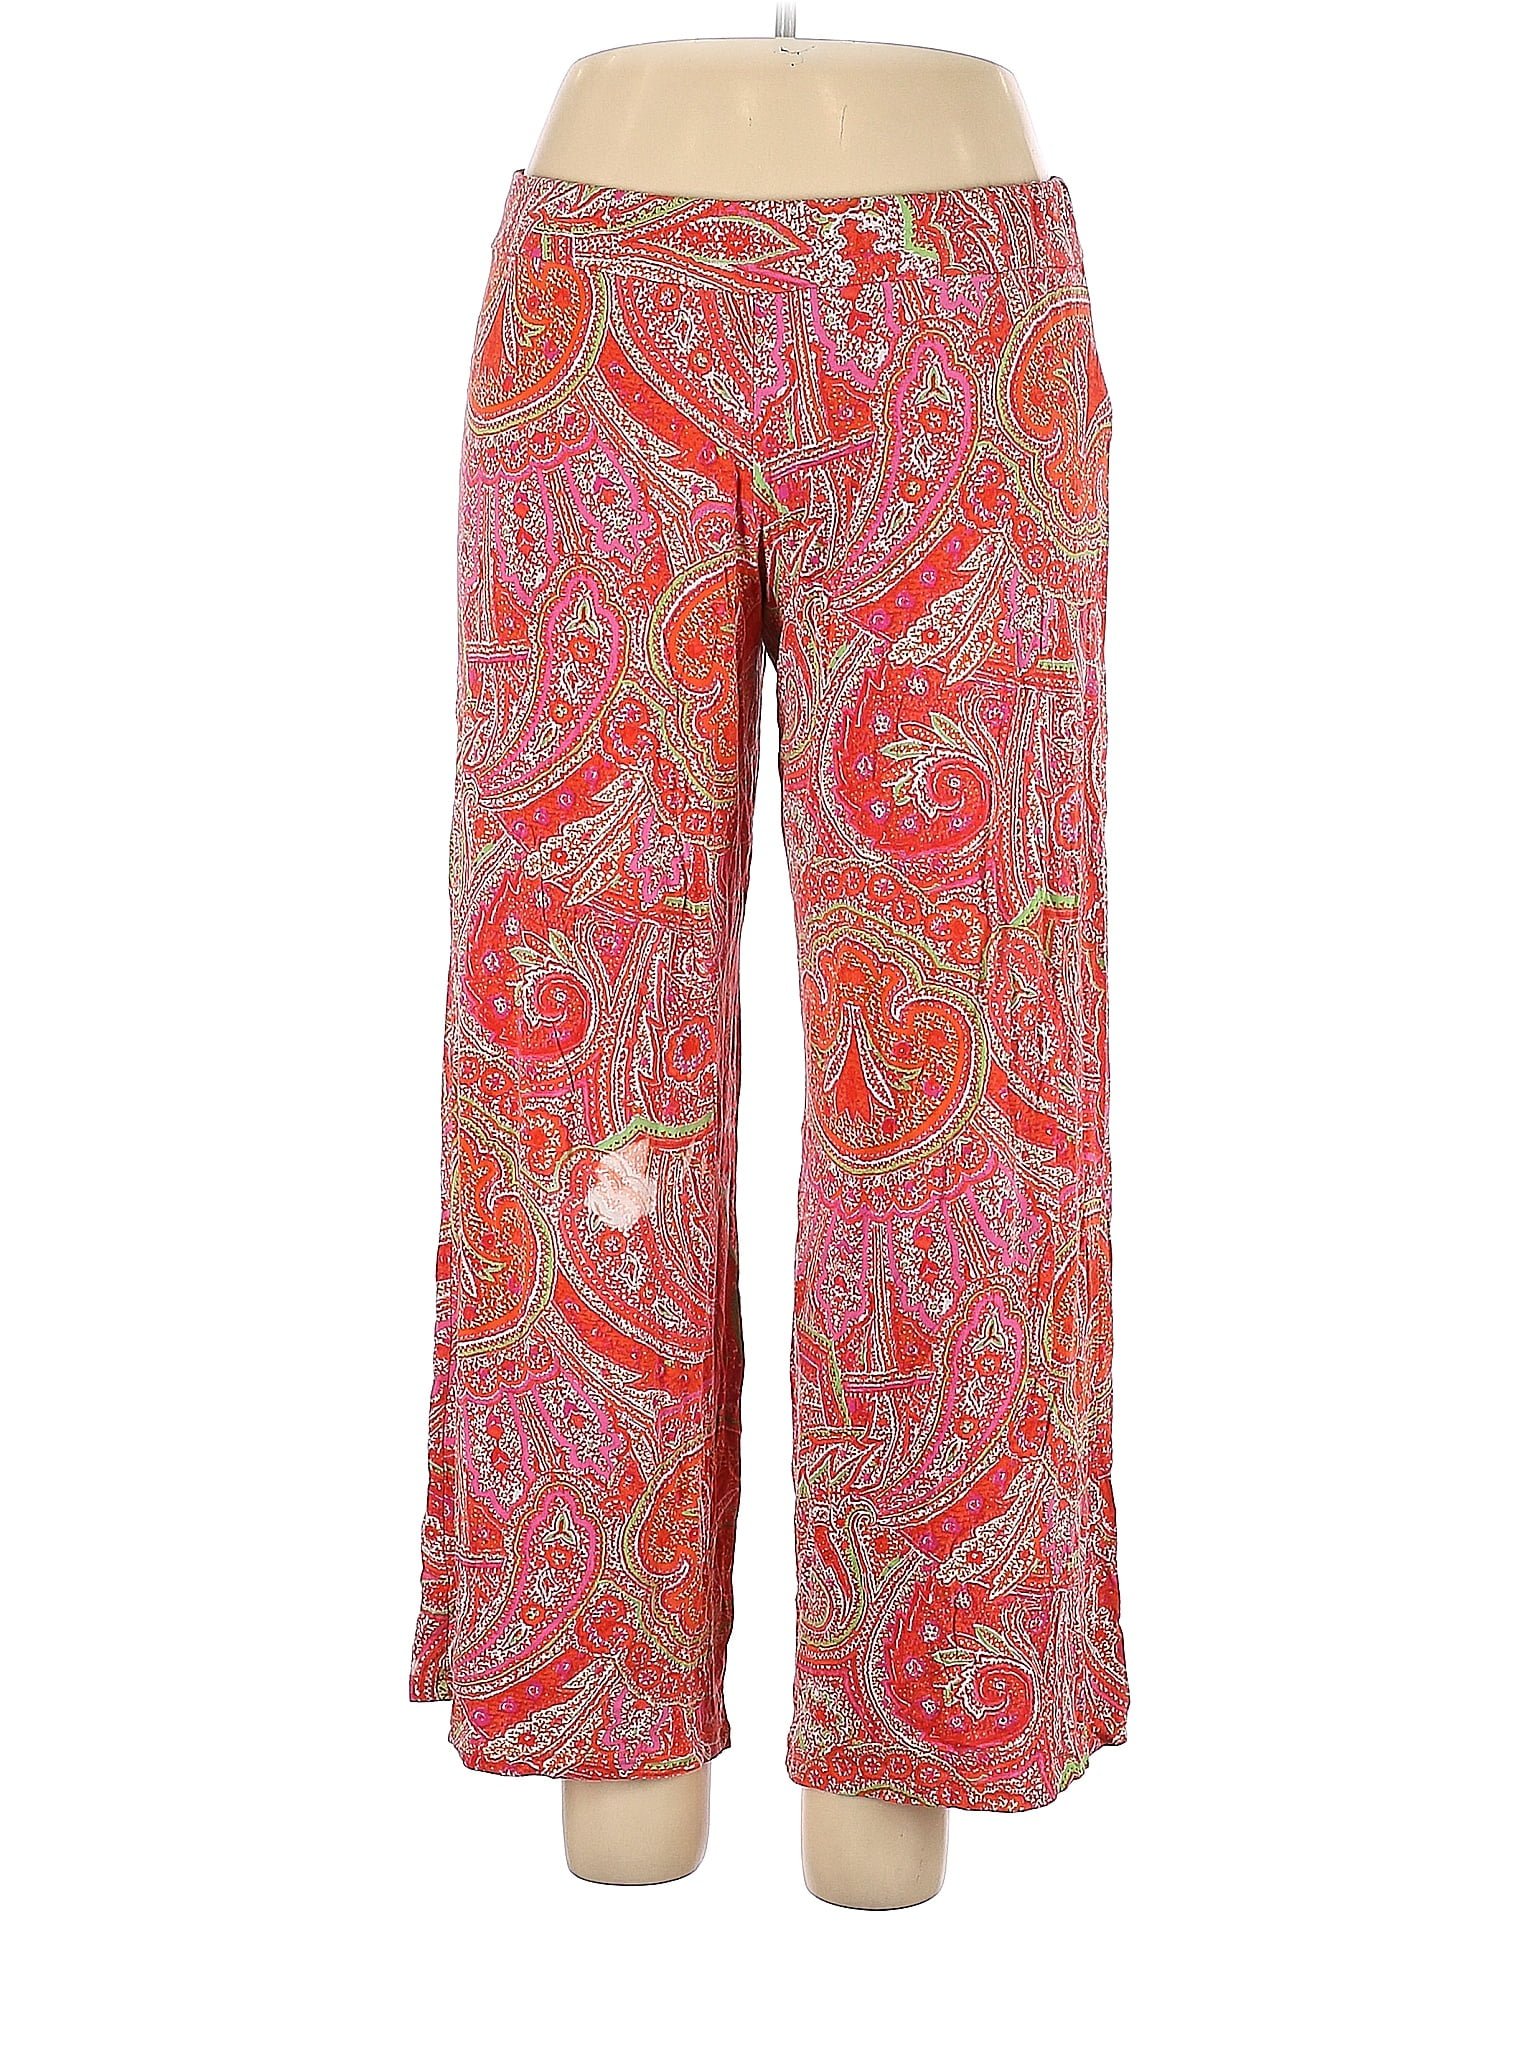 Lauren by Ralph Lauren Orange Casual Pants Size XL - 68% off | thredUP